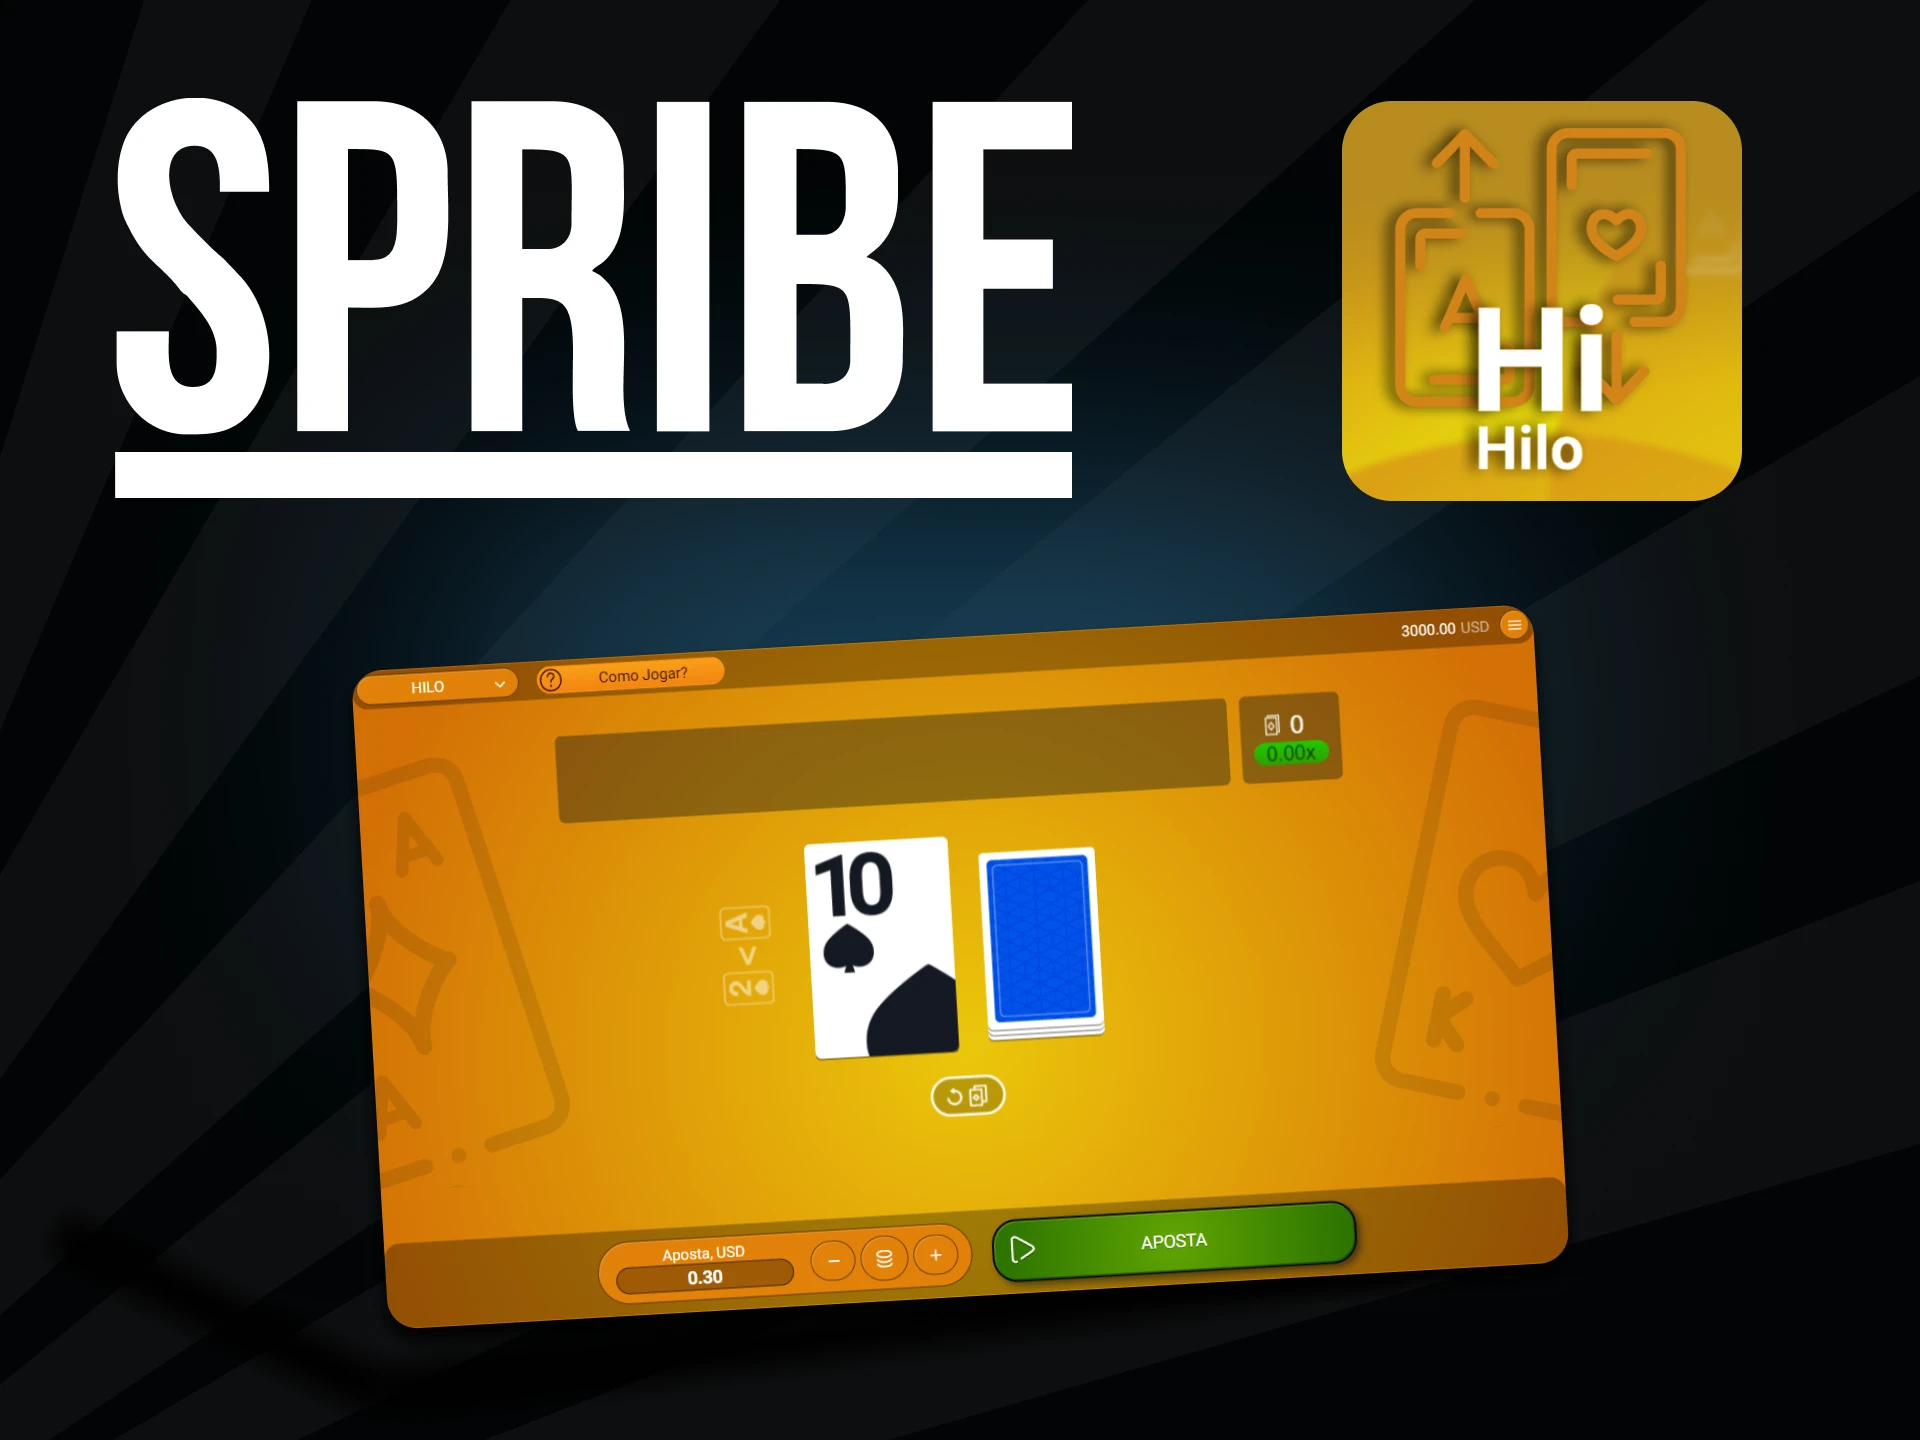 Para um jogo Spribe, escolha Hilo.